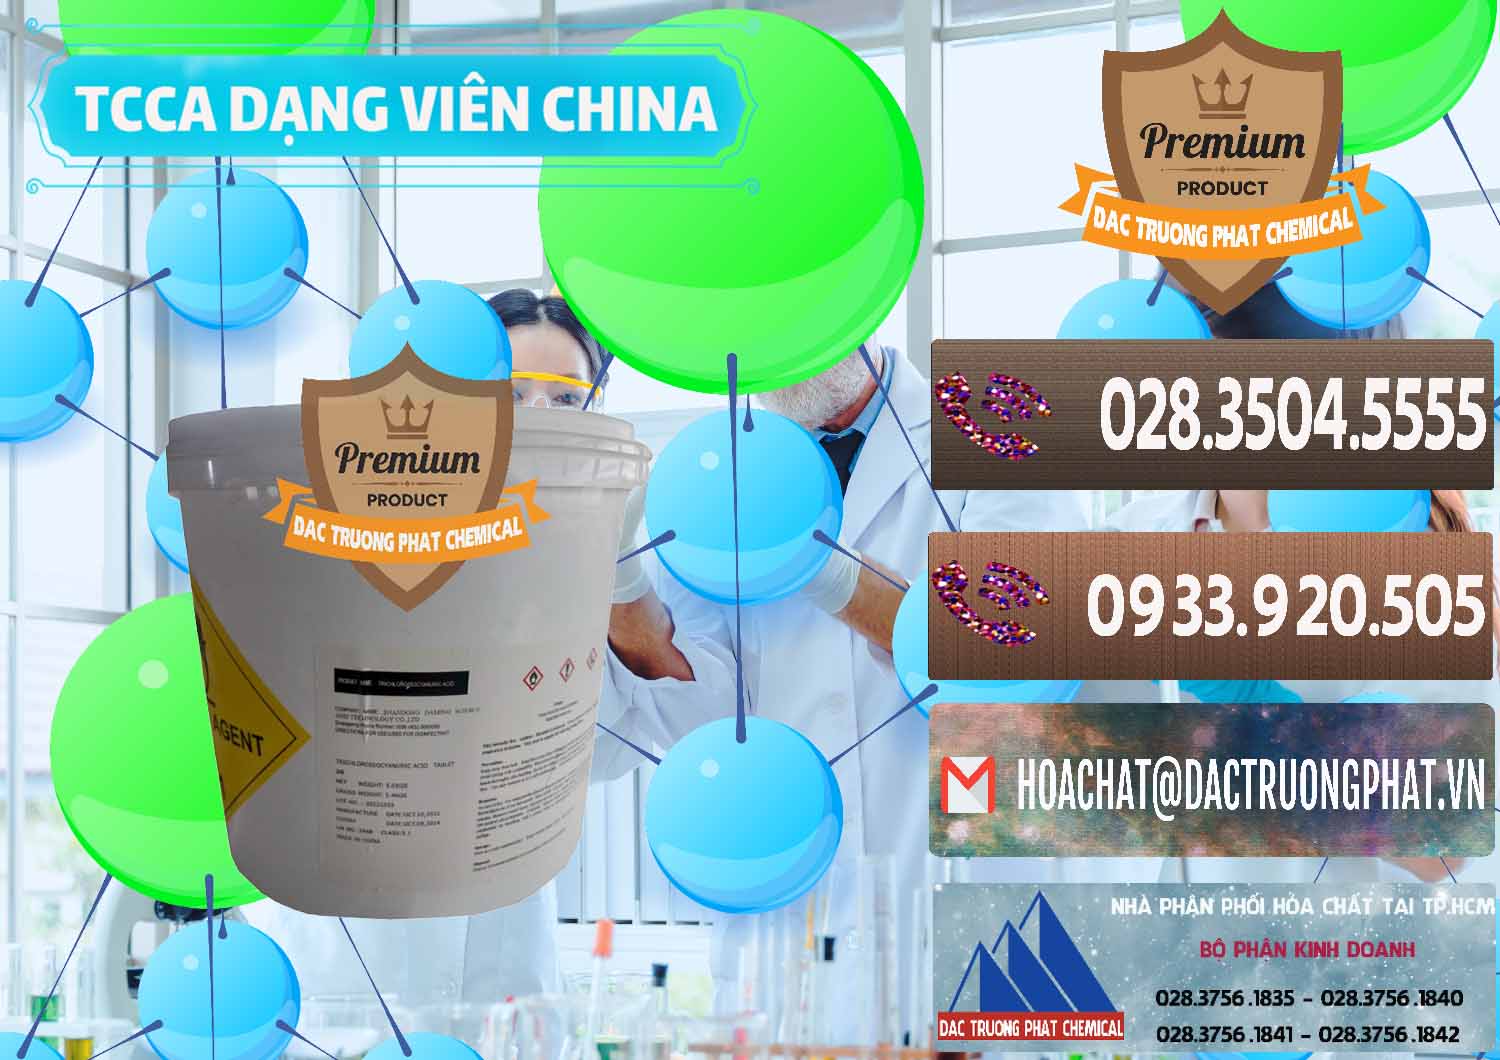 Cty chuyên kinh doanh _ bán TCCA - Acid Trichloroisocyanuric Dạng Viên Thùng 5kg Trung Quốc China - 0379 - Công ty chuyên bán - cung cấp hóa chất tại TP.HCM - hoachatviet.net